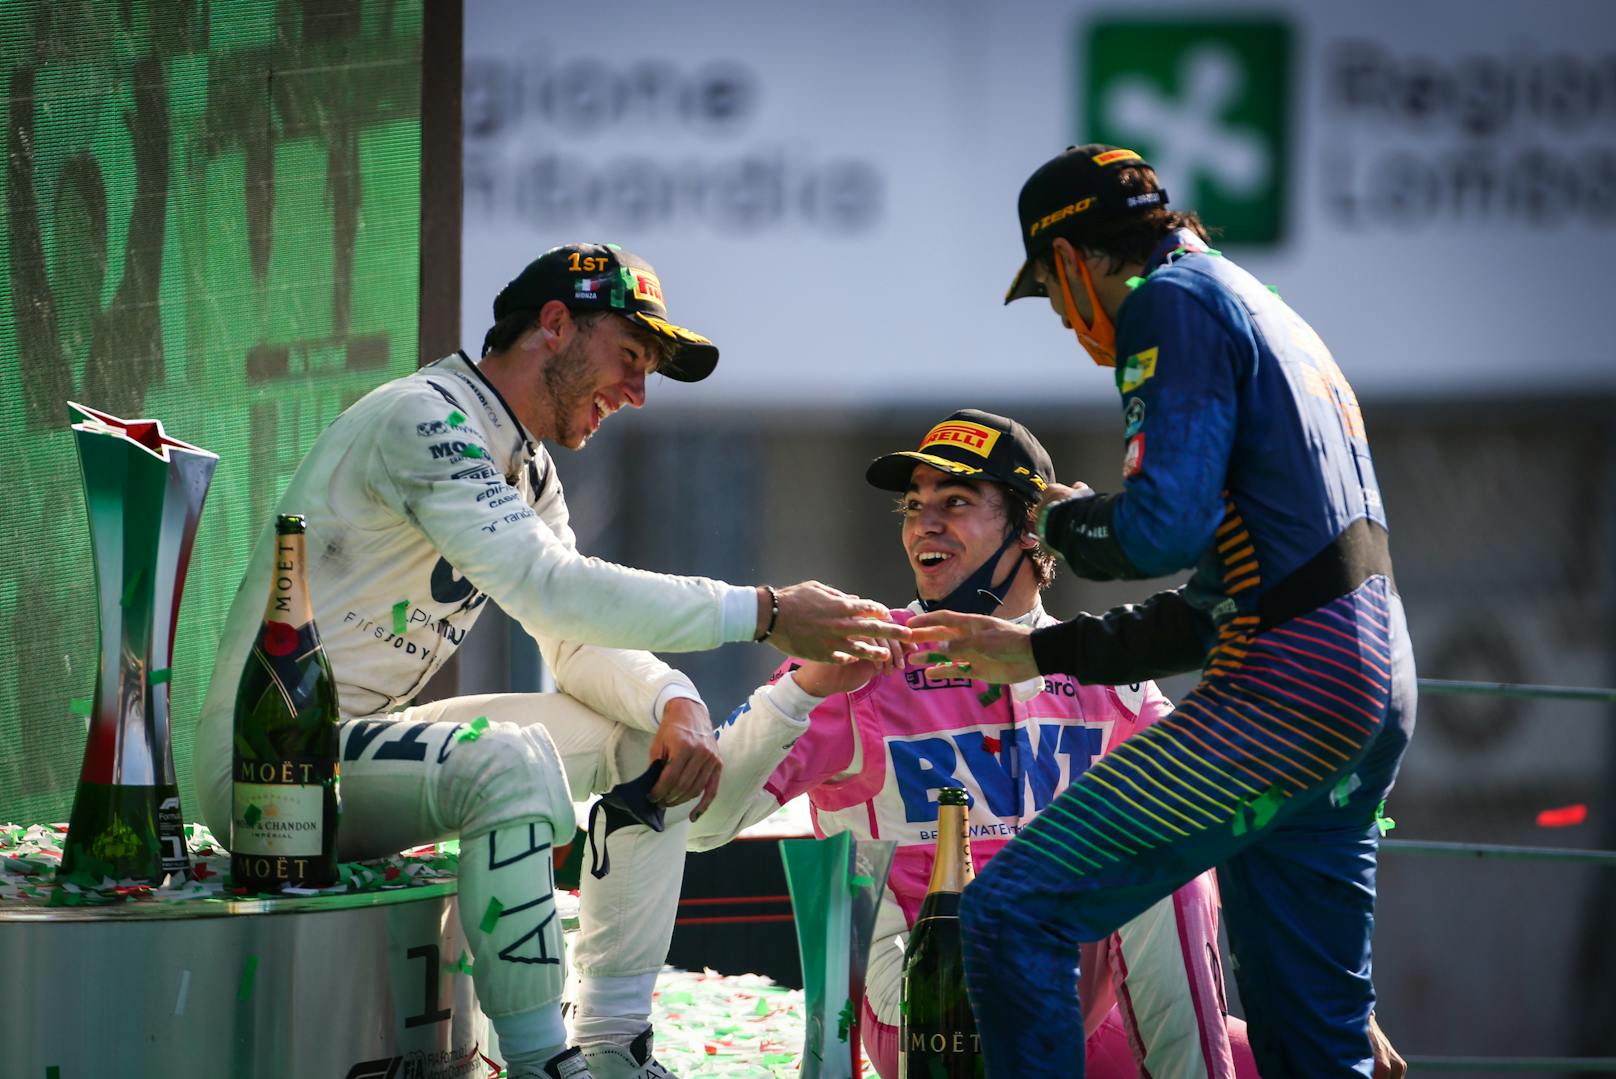 Ein Sensations-Podest gab es in Monza. Pierre Gasly (Fr) feierte im AlphaTauri seinen Premierensieg – vor Carlos Sainz Jr. (Sp) und Lance Stroll (Kan).